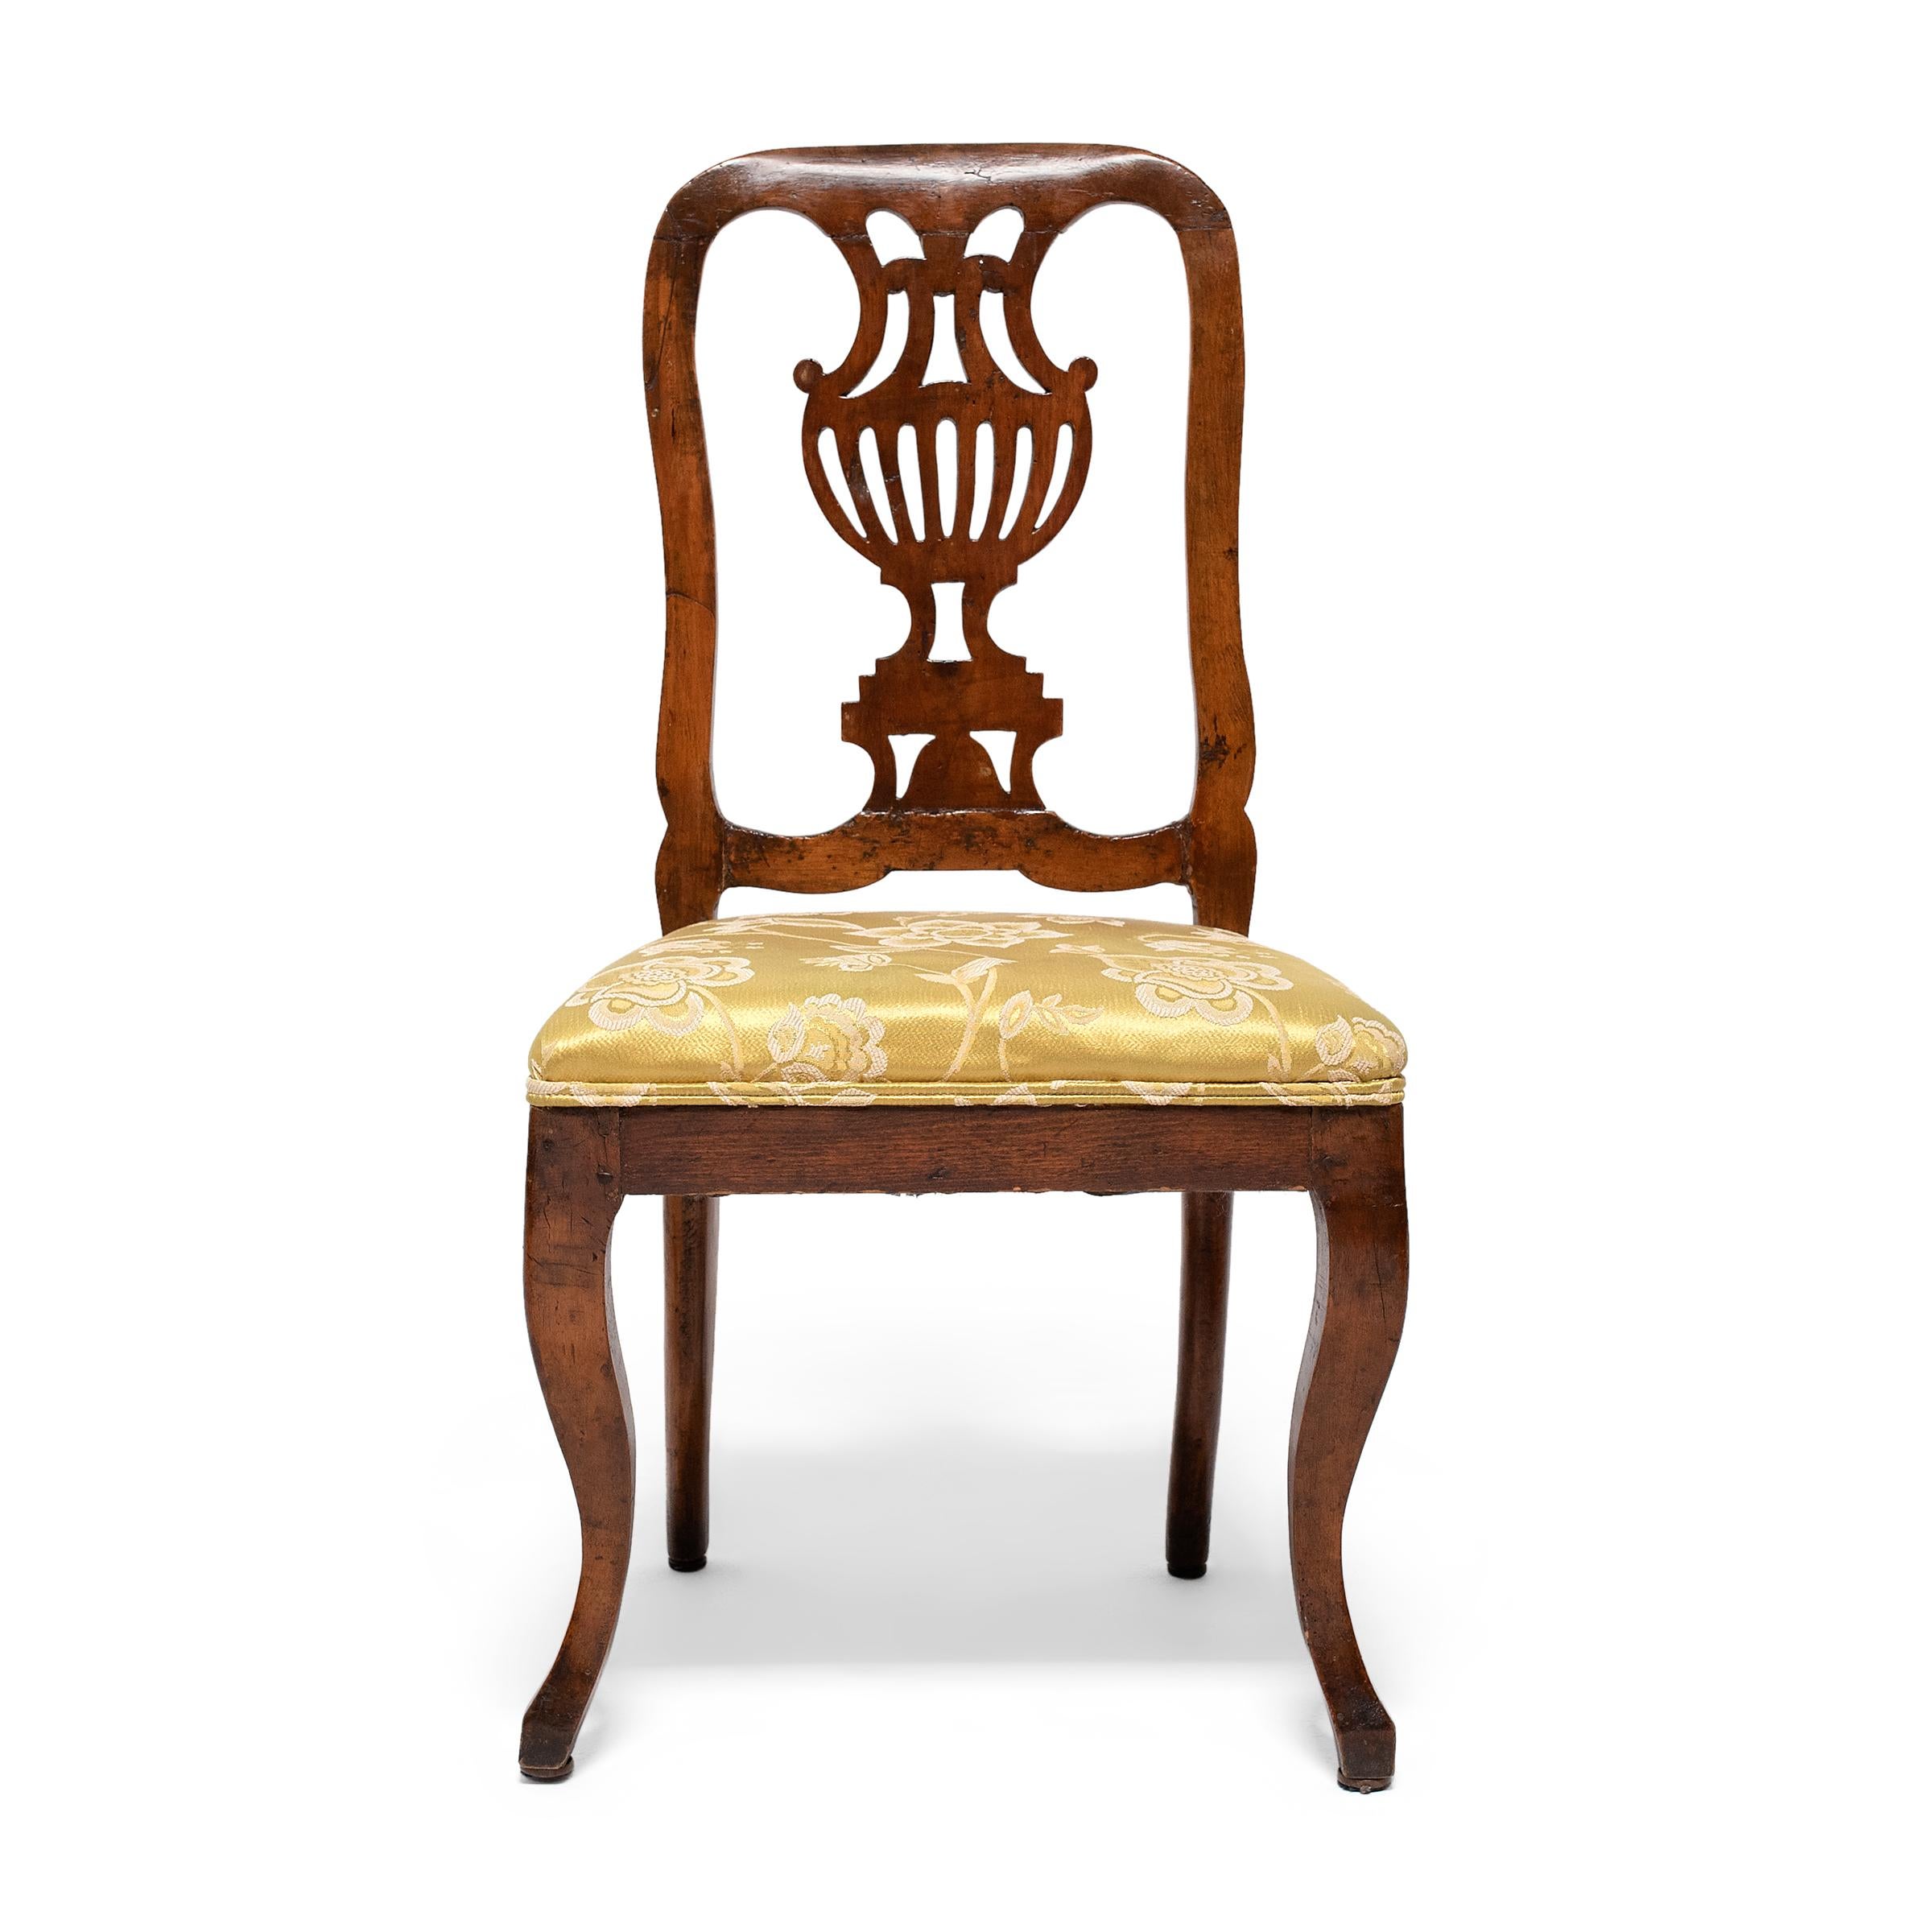 Dieses Paar antiker Esszimmerstühle ist im Stil der Chippendale-Möbel mit edlen Hartholzrahmen und gepolsterten Sitzen gefertigt. Die auf das frühe 19. Jahrhundert datierten Beistellstühle sind nur minimal verziert, um den Blick auf die geschnitzten